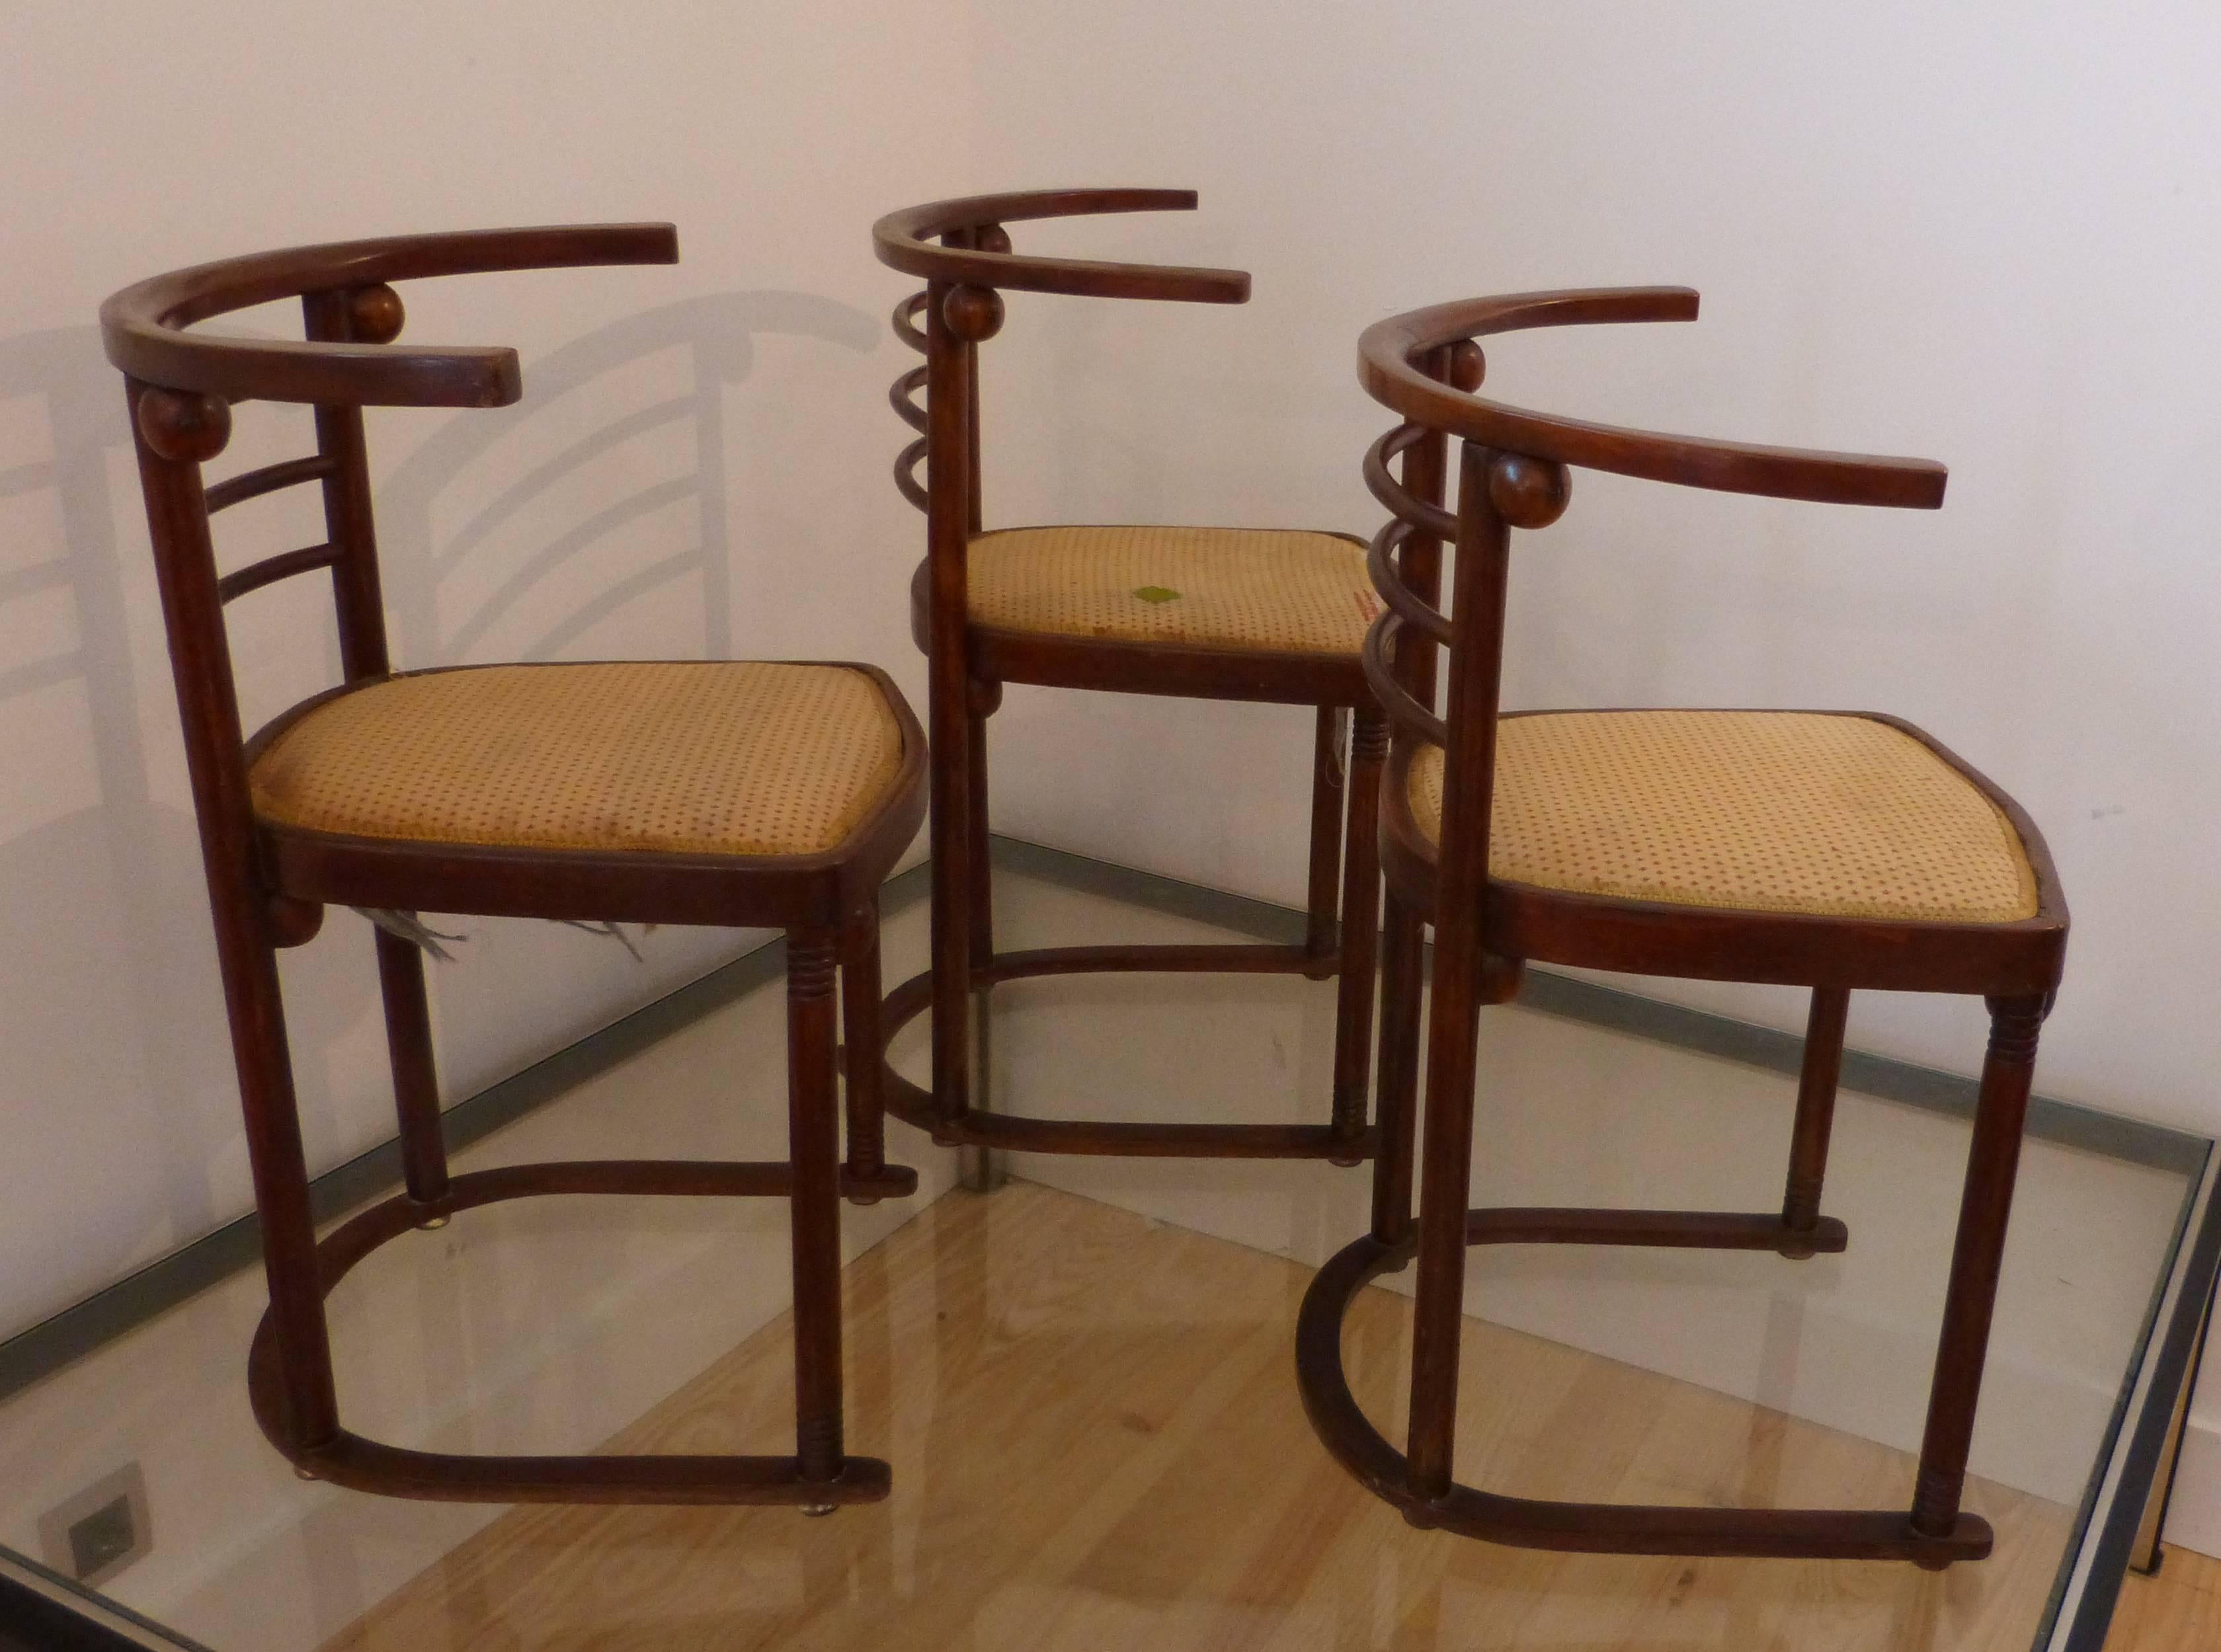 Art Nouveau Set of Three Fledermauss Chairs by Josef Hoffmann 1905